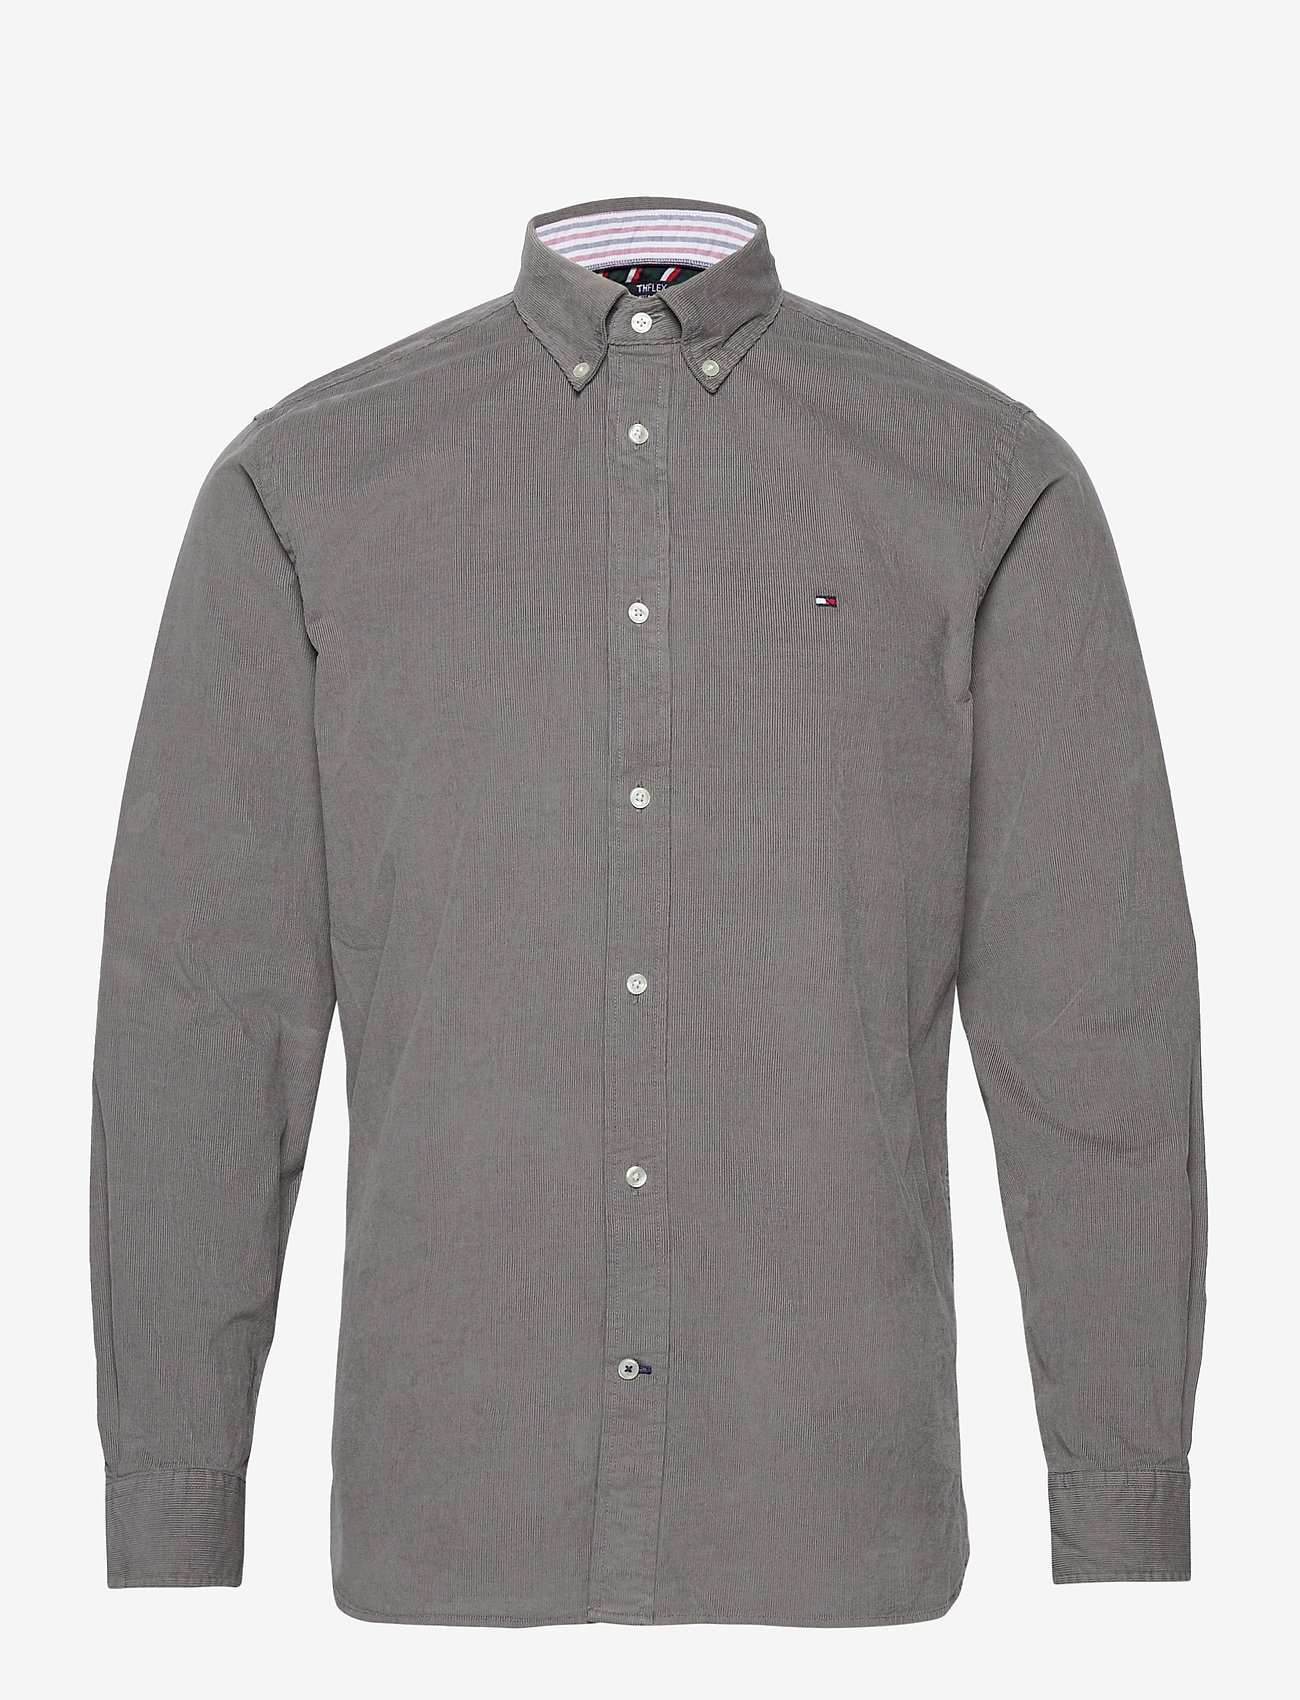 Flex Corduroy Shirt (Pewter Grey) (49 